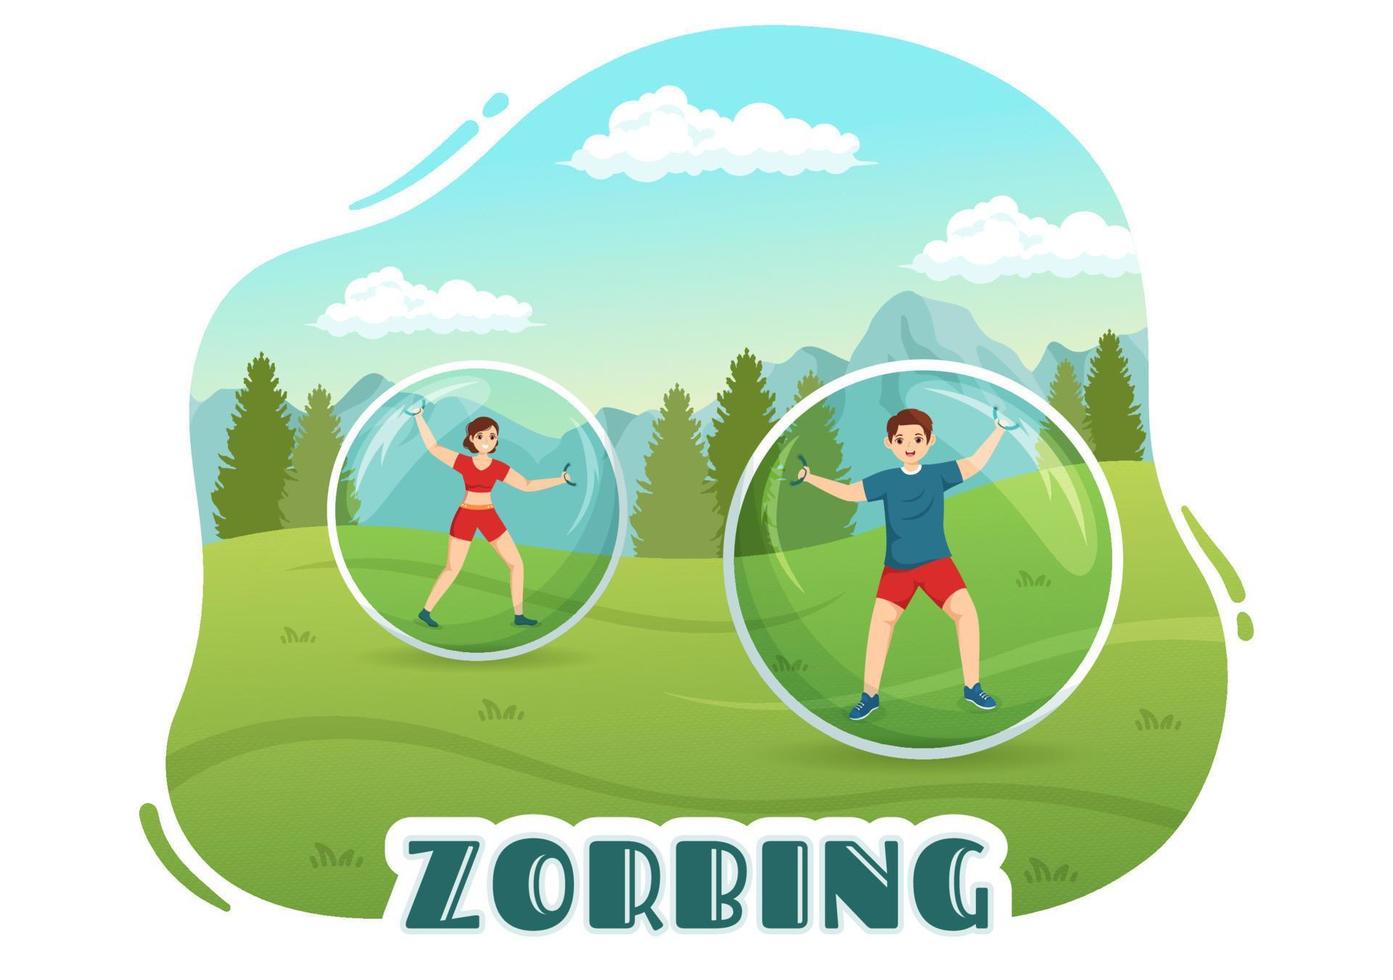 ilustración de zorbing con personas jugando burbujas en un campo verde o piscina para banner web o página de destino en plantillas planas dibujadas a mano de dibujos animados vector